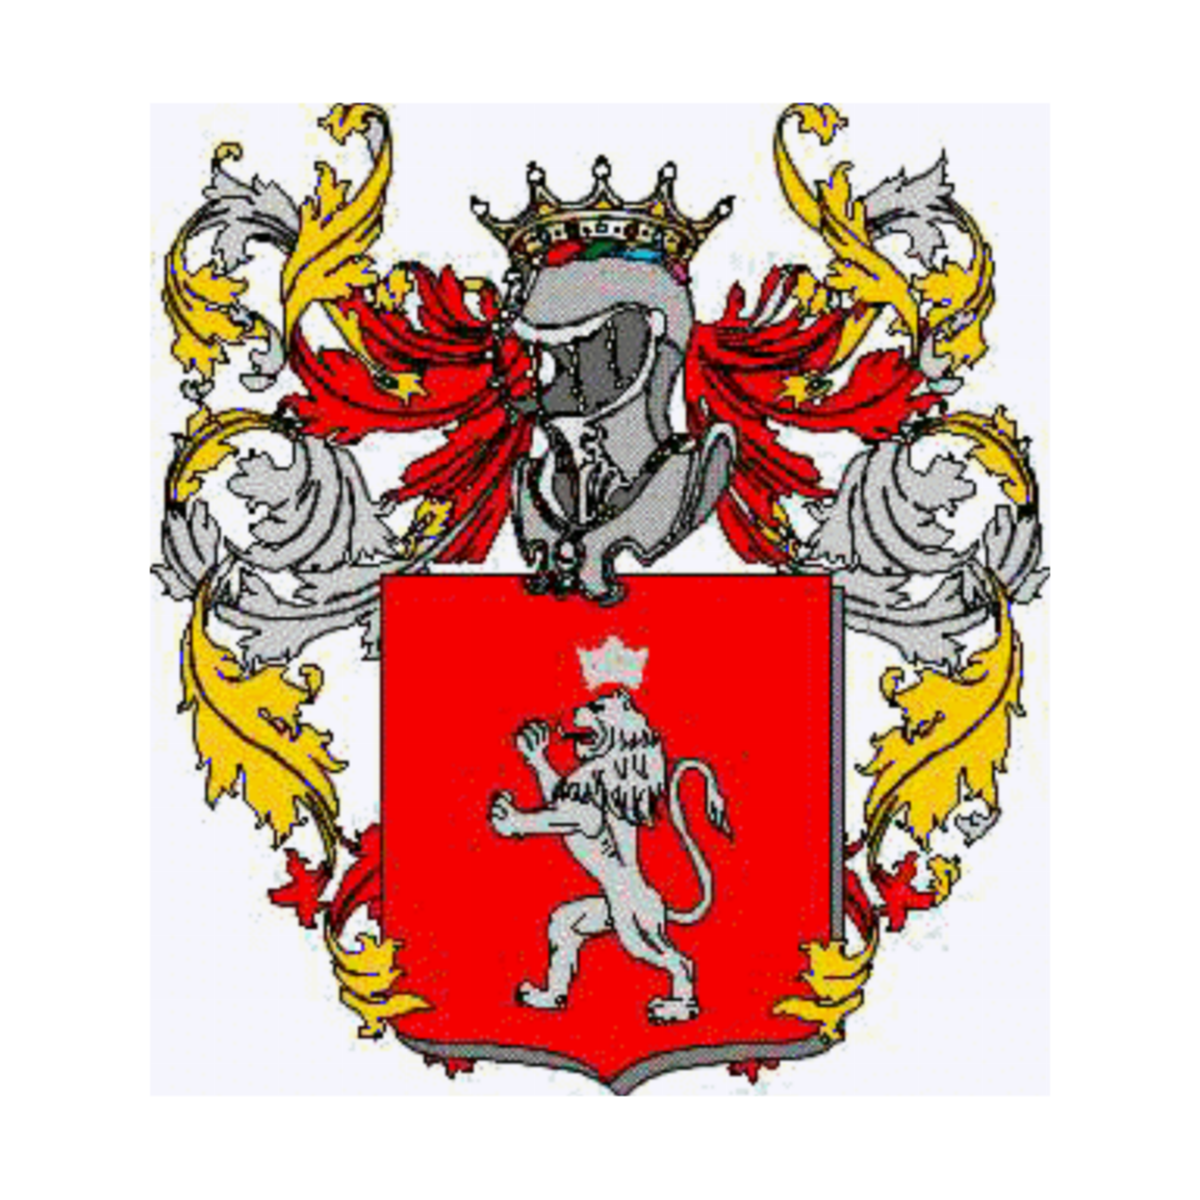 Wappen der Familie Venturi Casadio